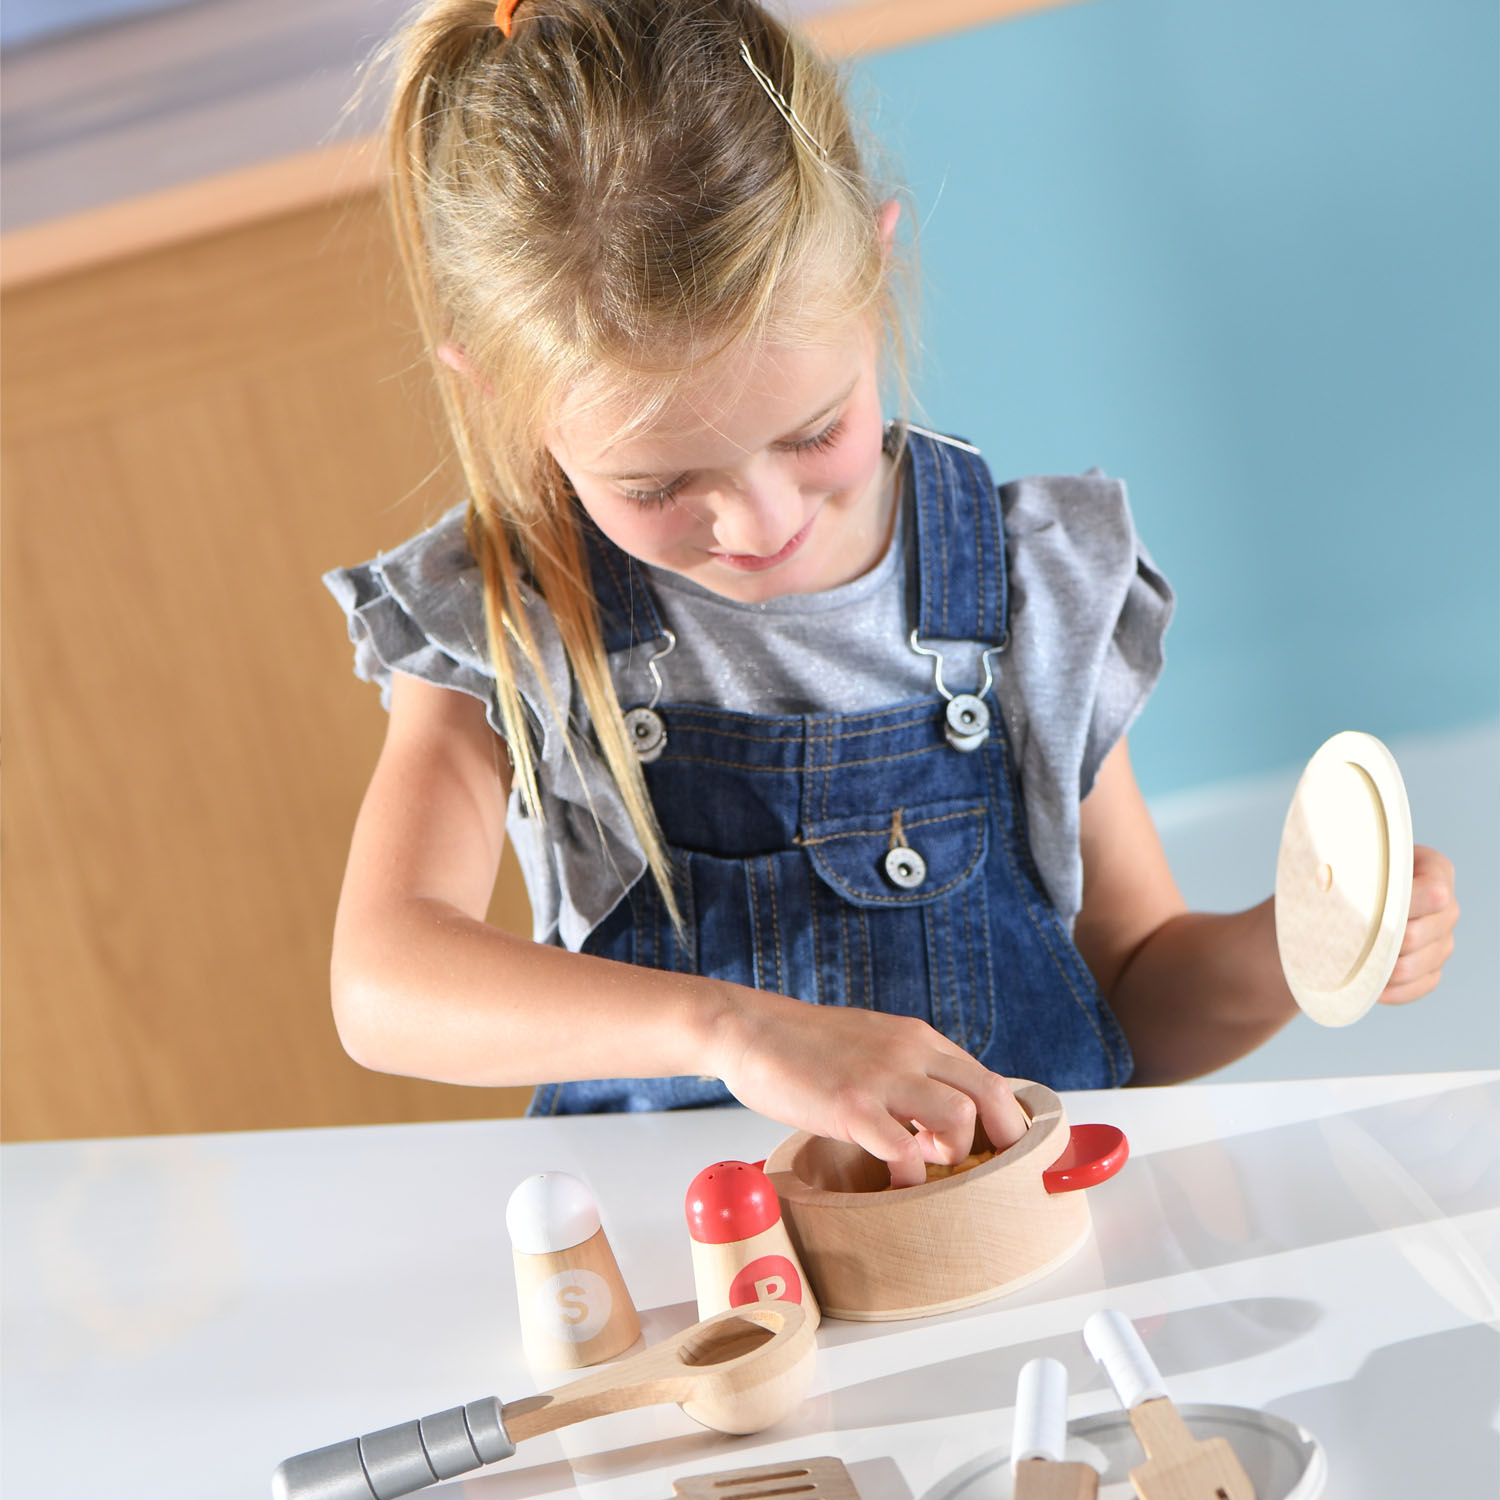 Cuisine tout en un - jouet en bois dinette pour enfant, HAPE  La  Boissellerie Magasin de jouets en bois et jeux pour enfant & adulte